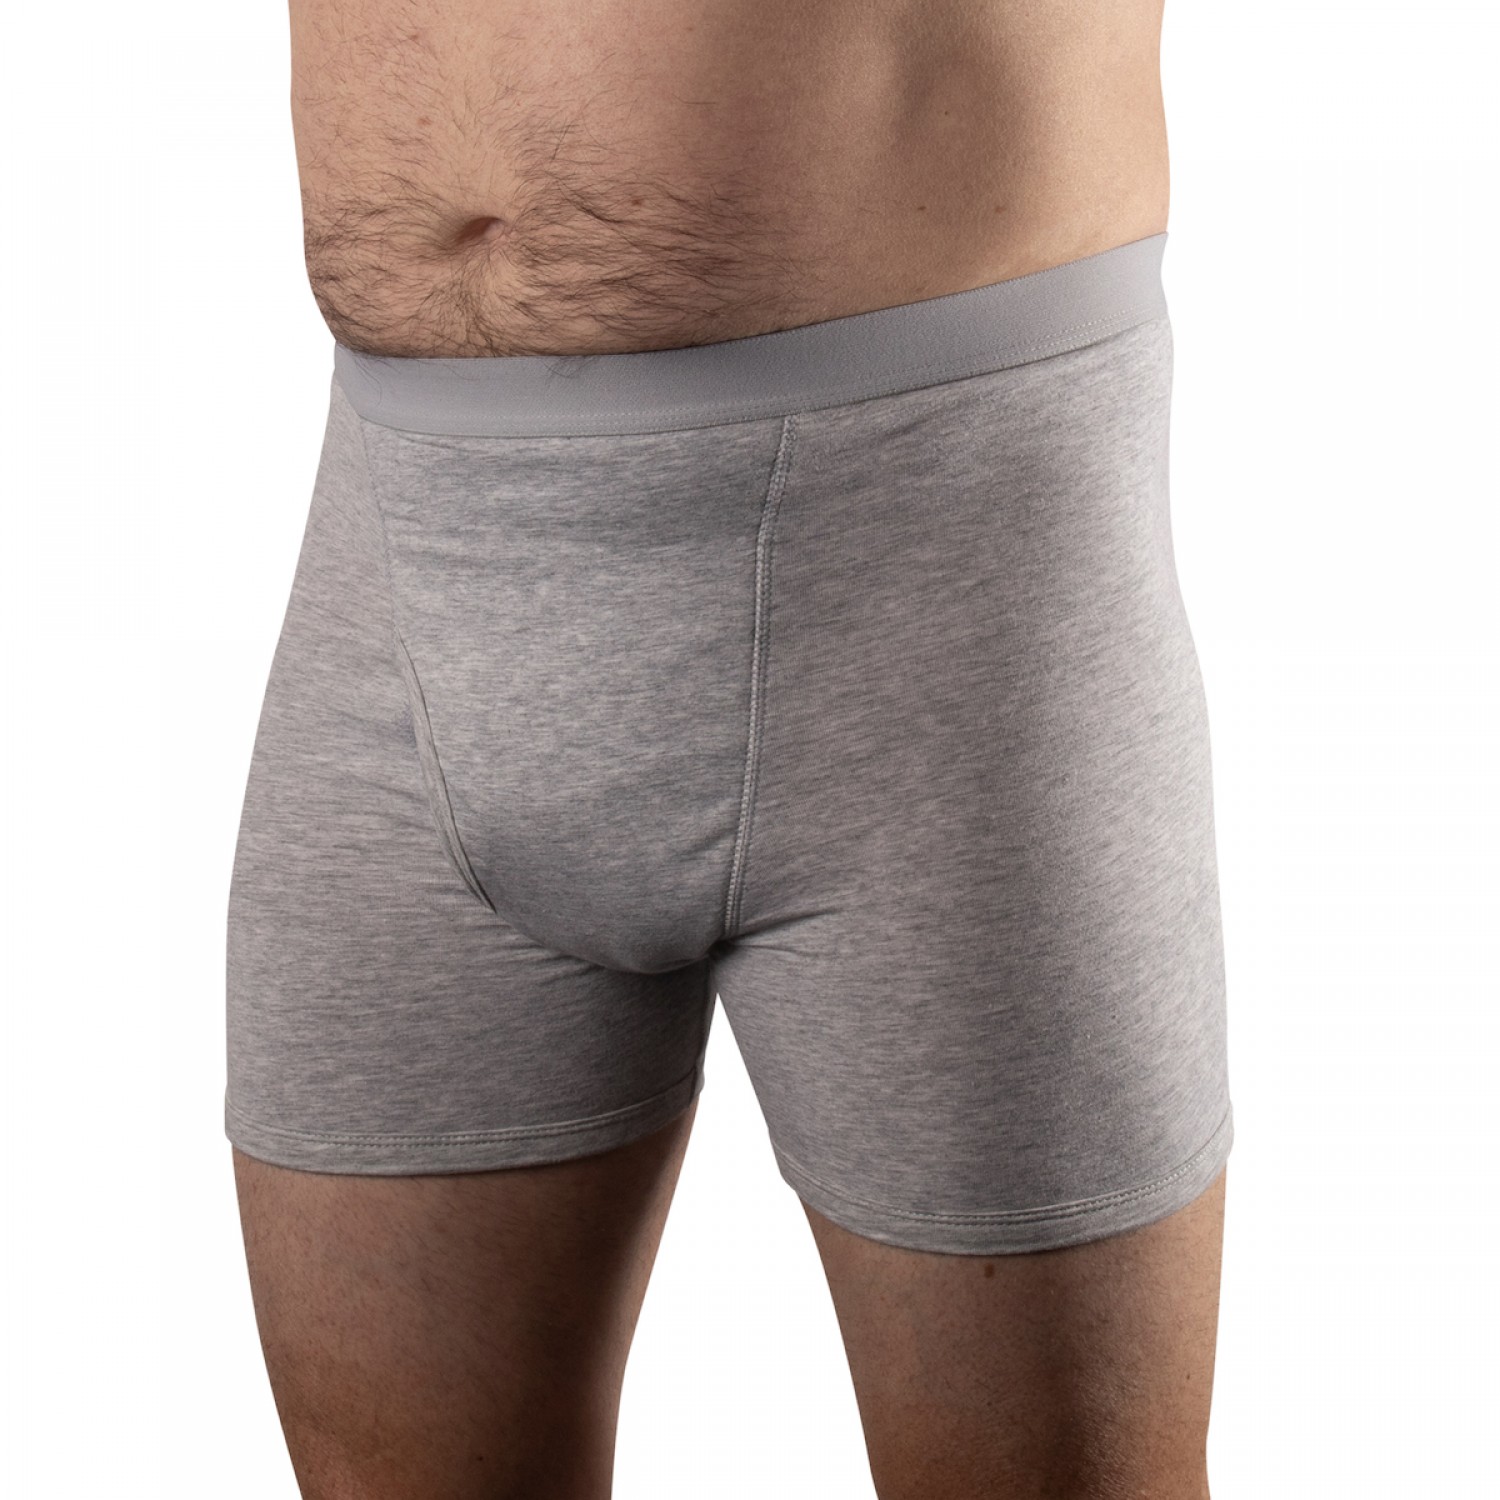 5701 G Conni Kalven Mens Underwear WEB 2000 1500x1500